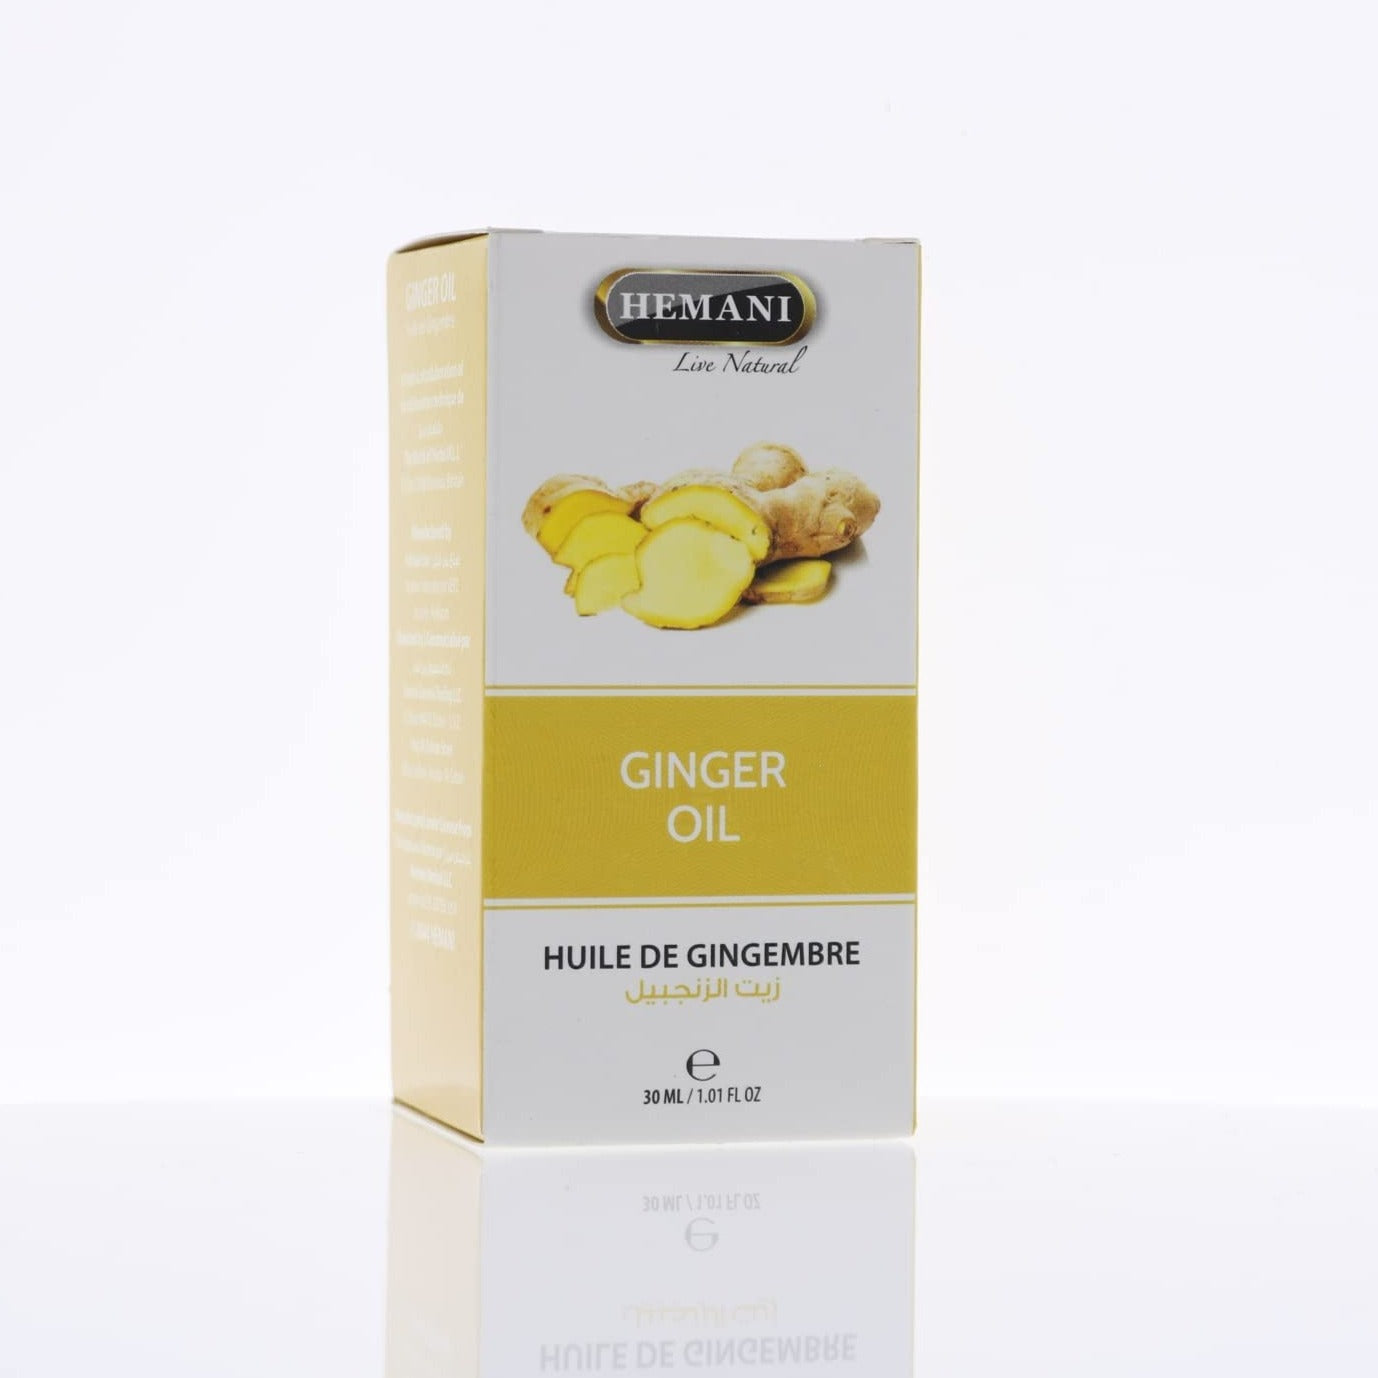 Hemani Ginger Oil, 30 ml